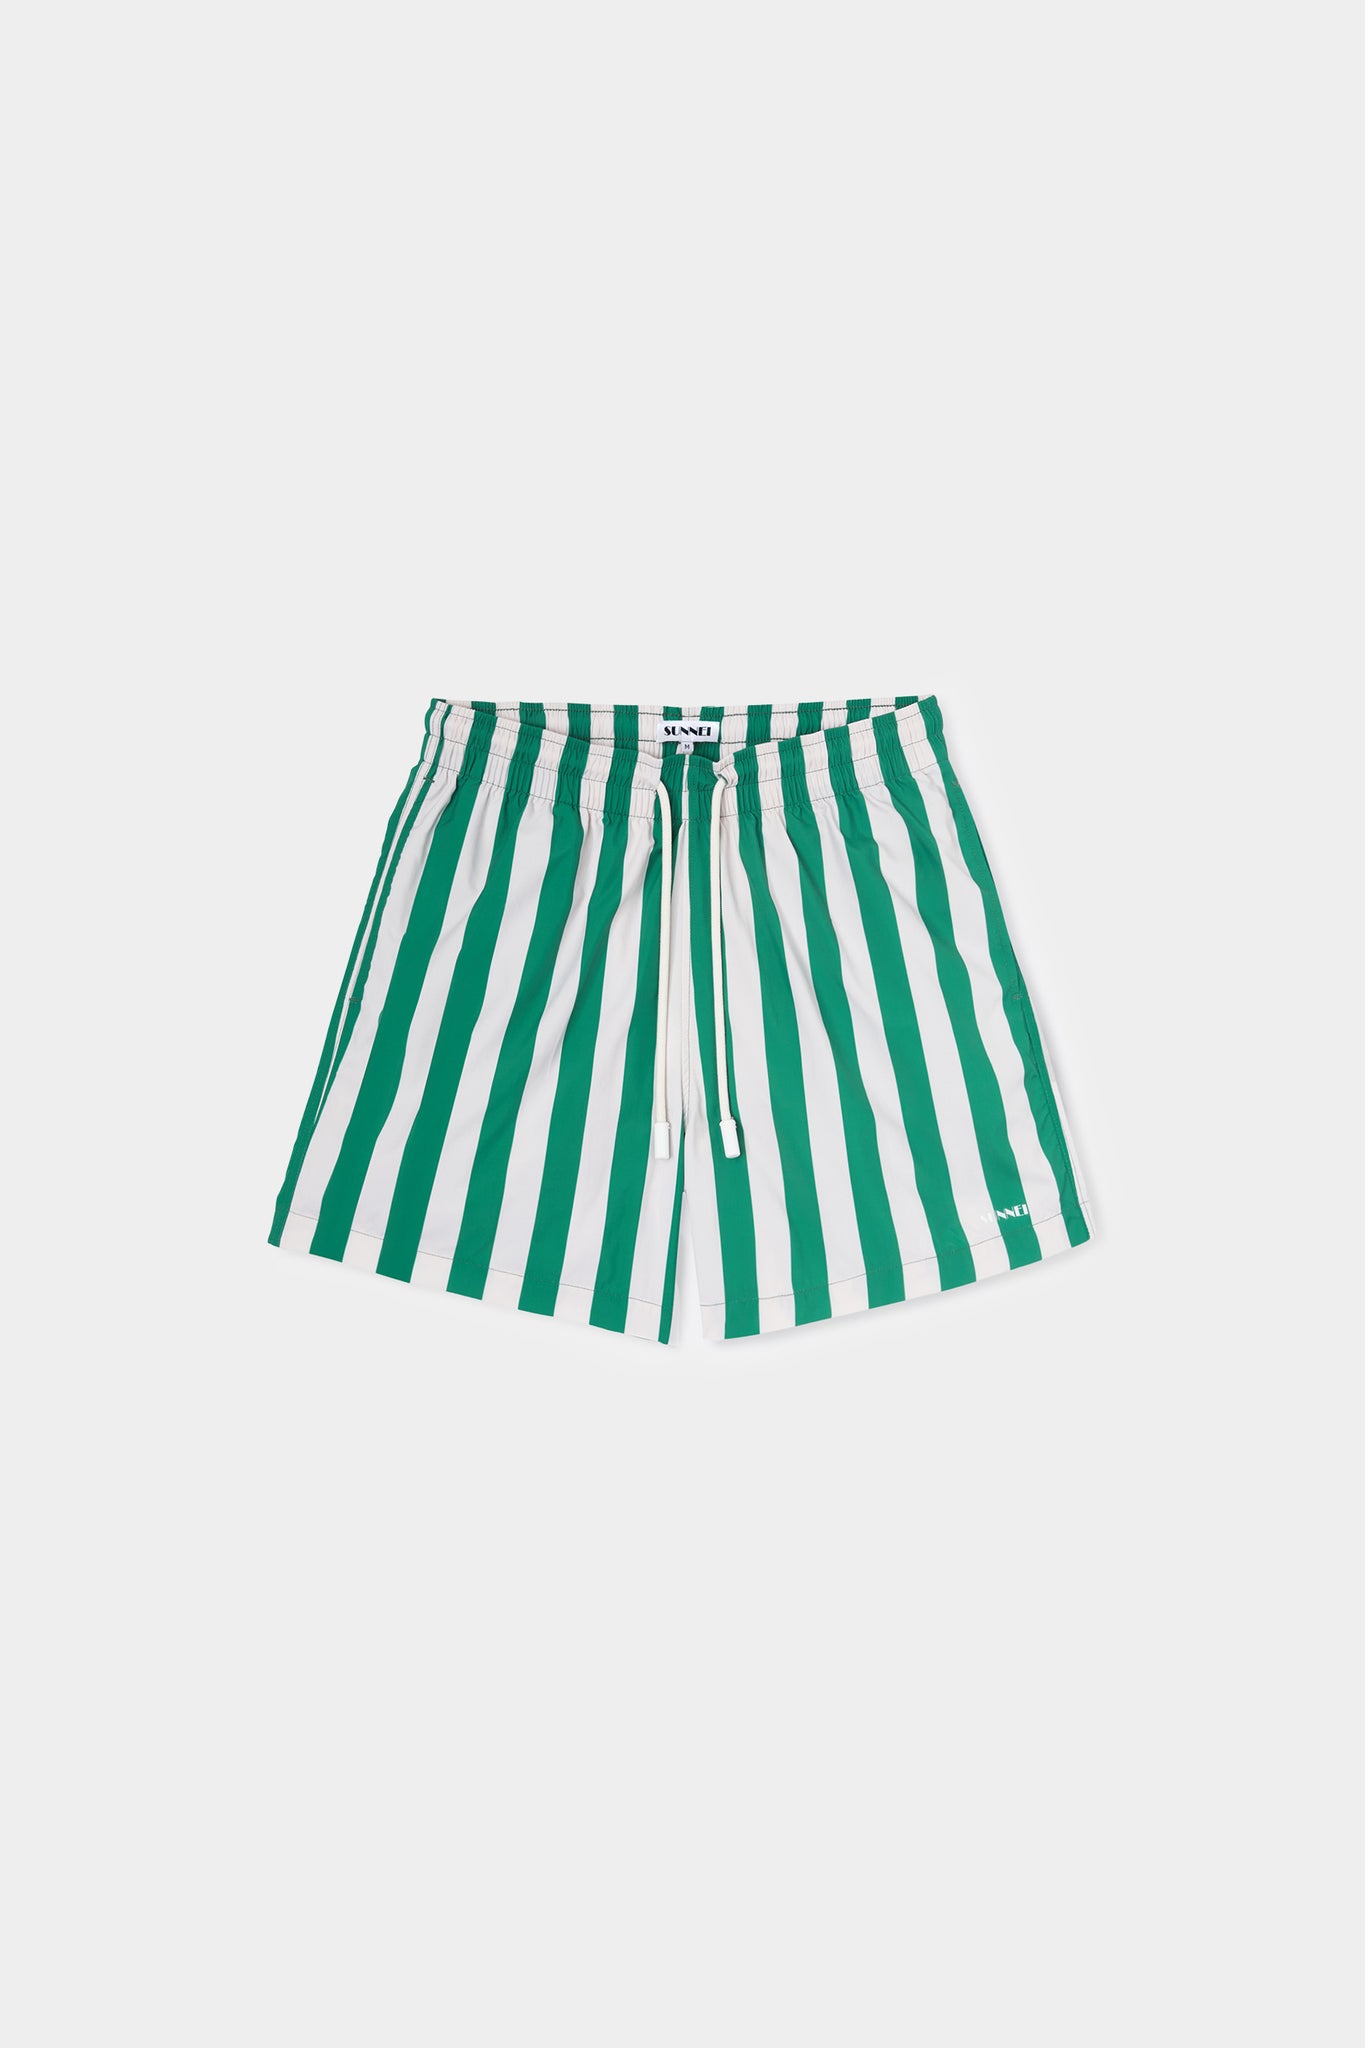 SWIM SHORTS / off white & green stripes